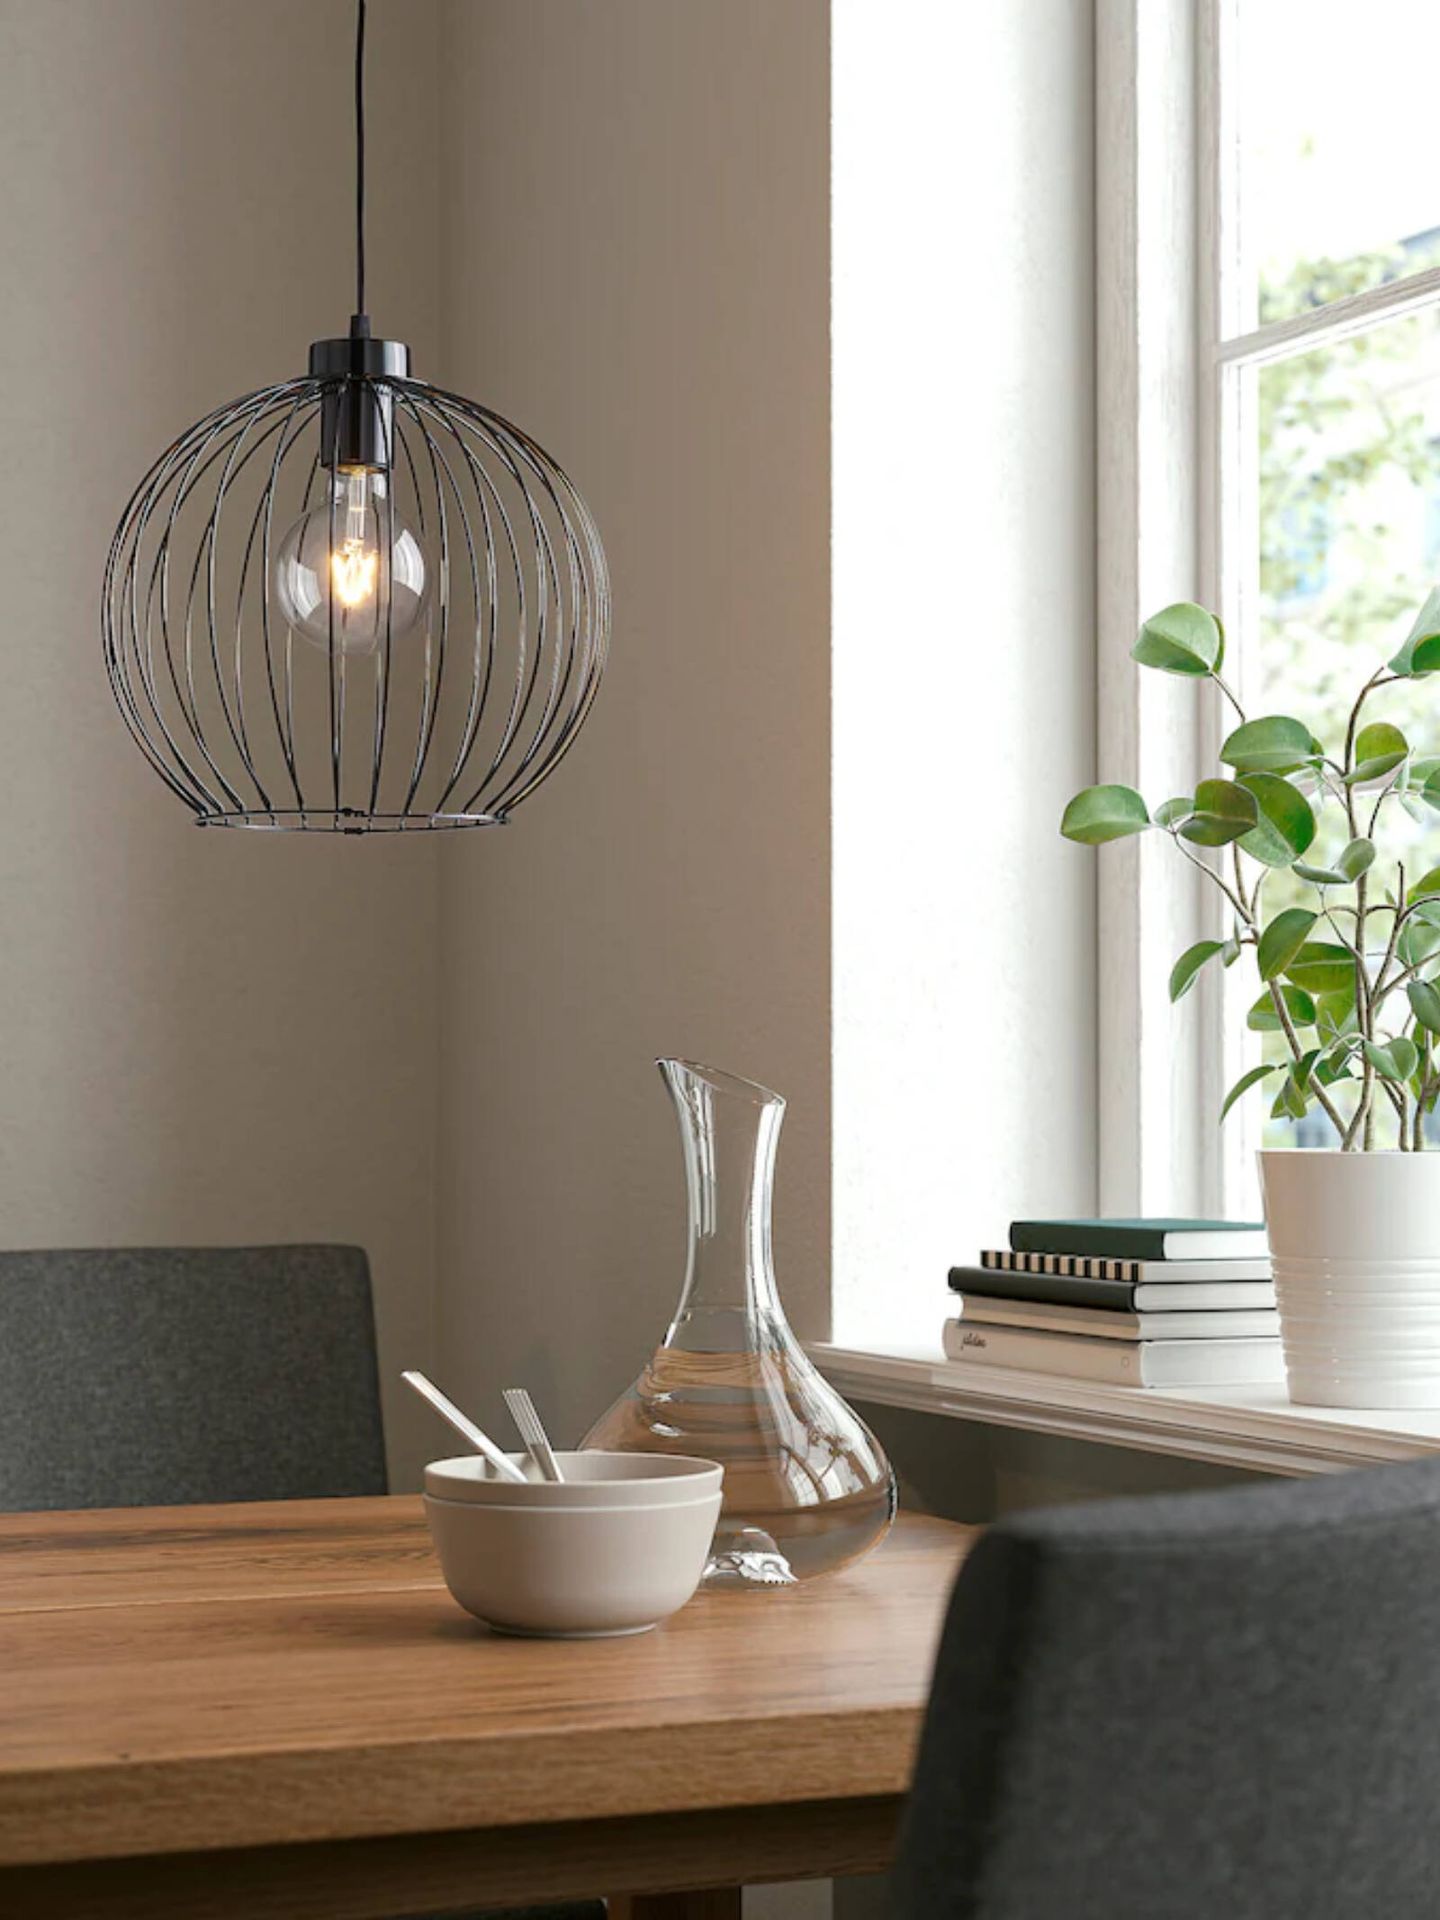 Lámparas low cost tipo jaula para darle a tu casa un toque moderno. (Cortesía/Ikea)